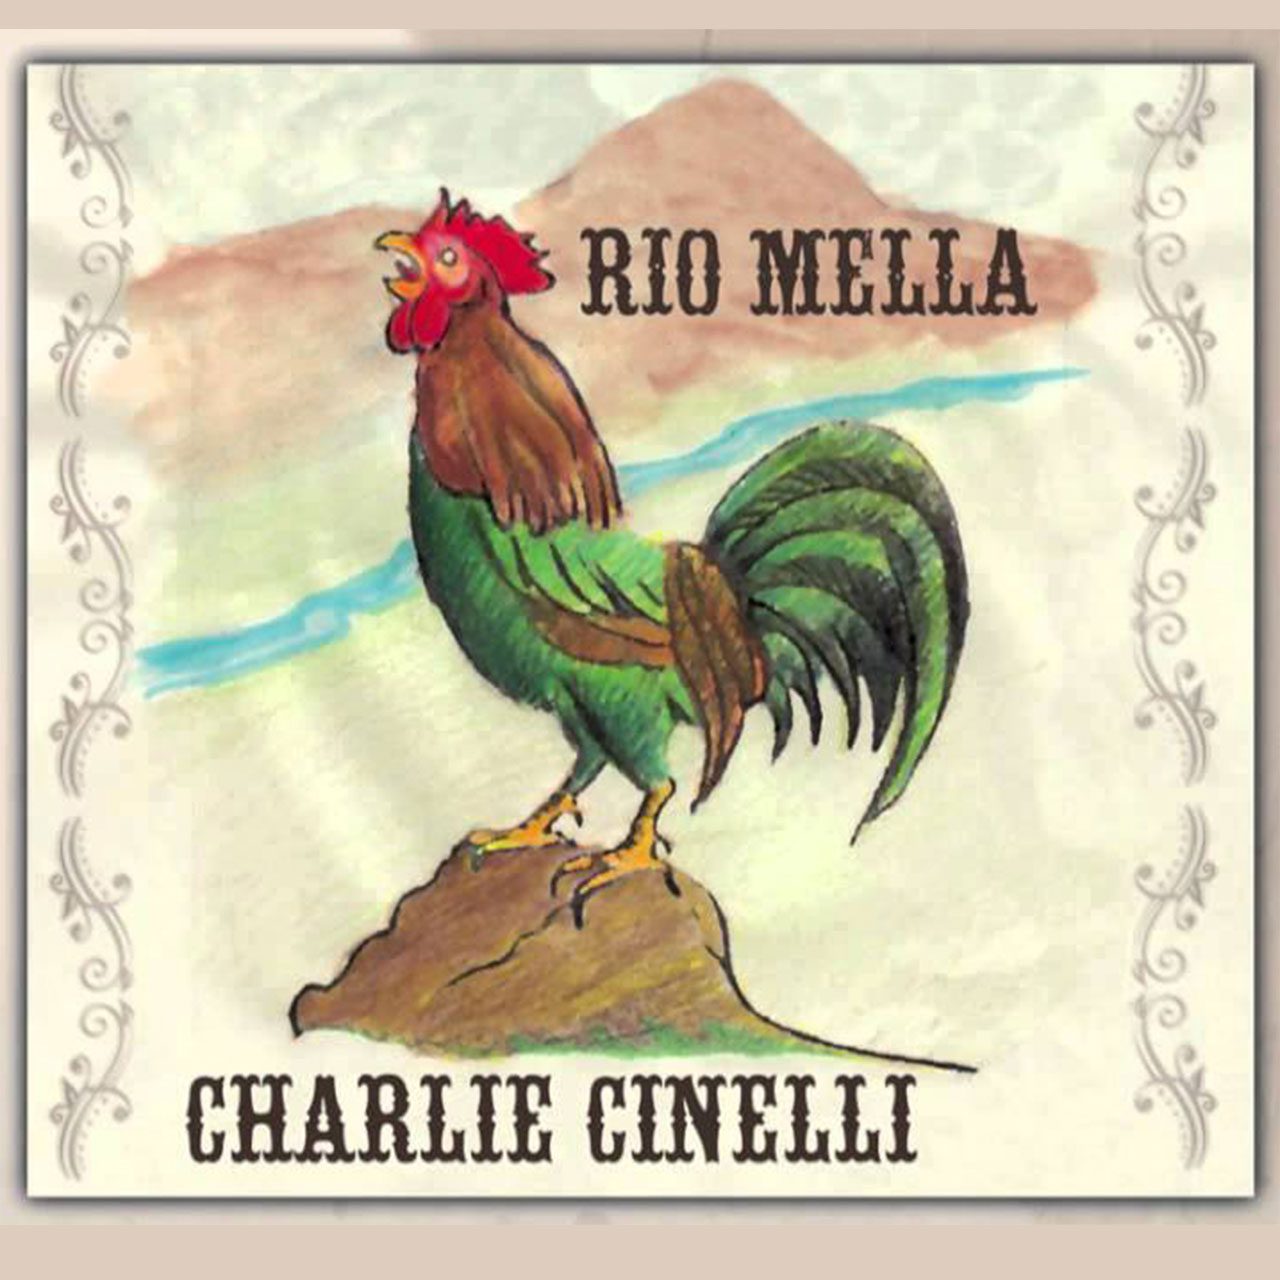 Charlie-Cinelli---“Rio-Mella” cover album